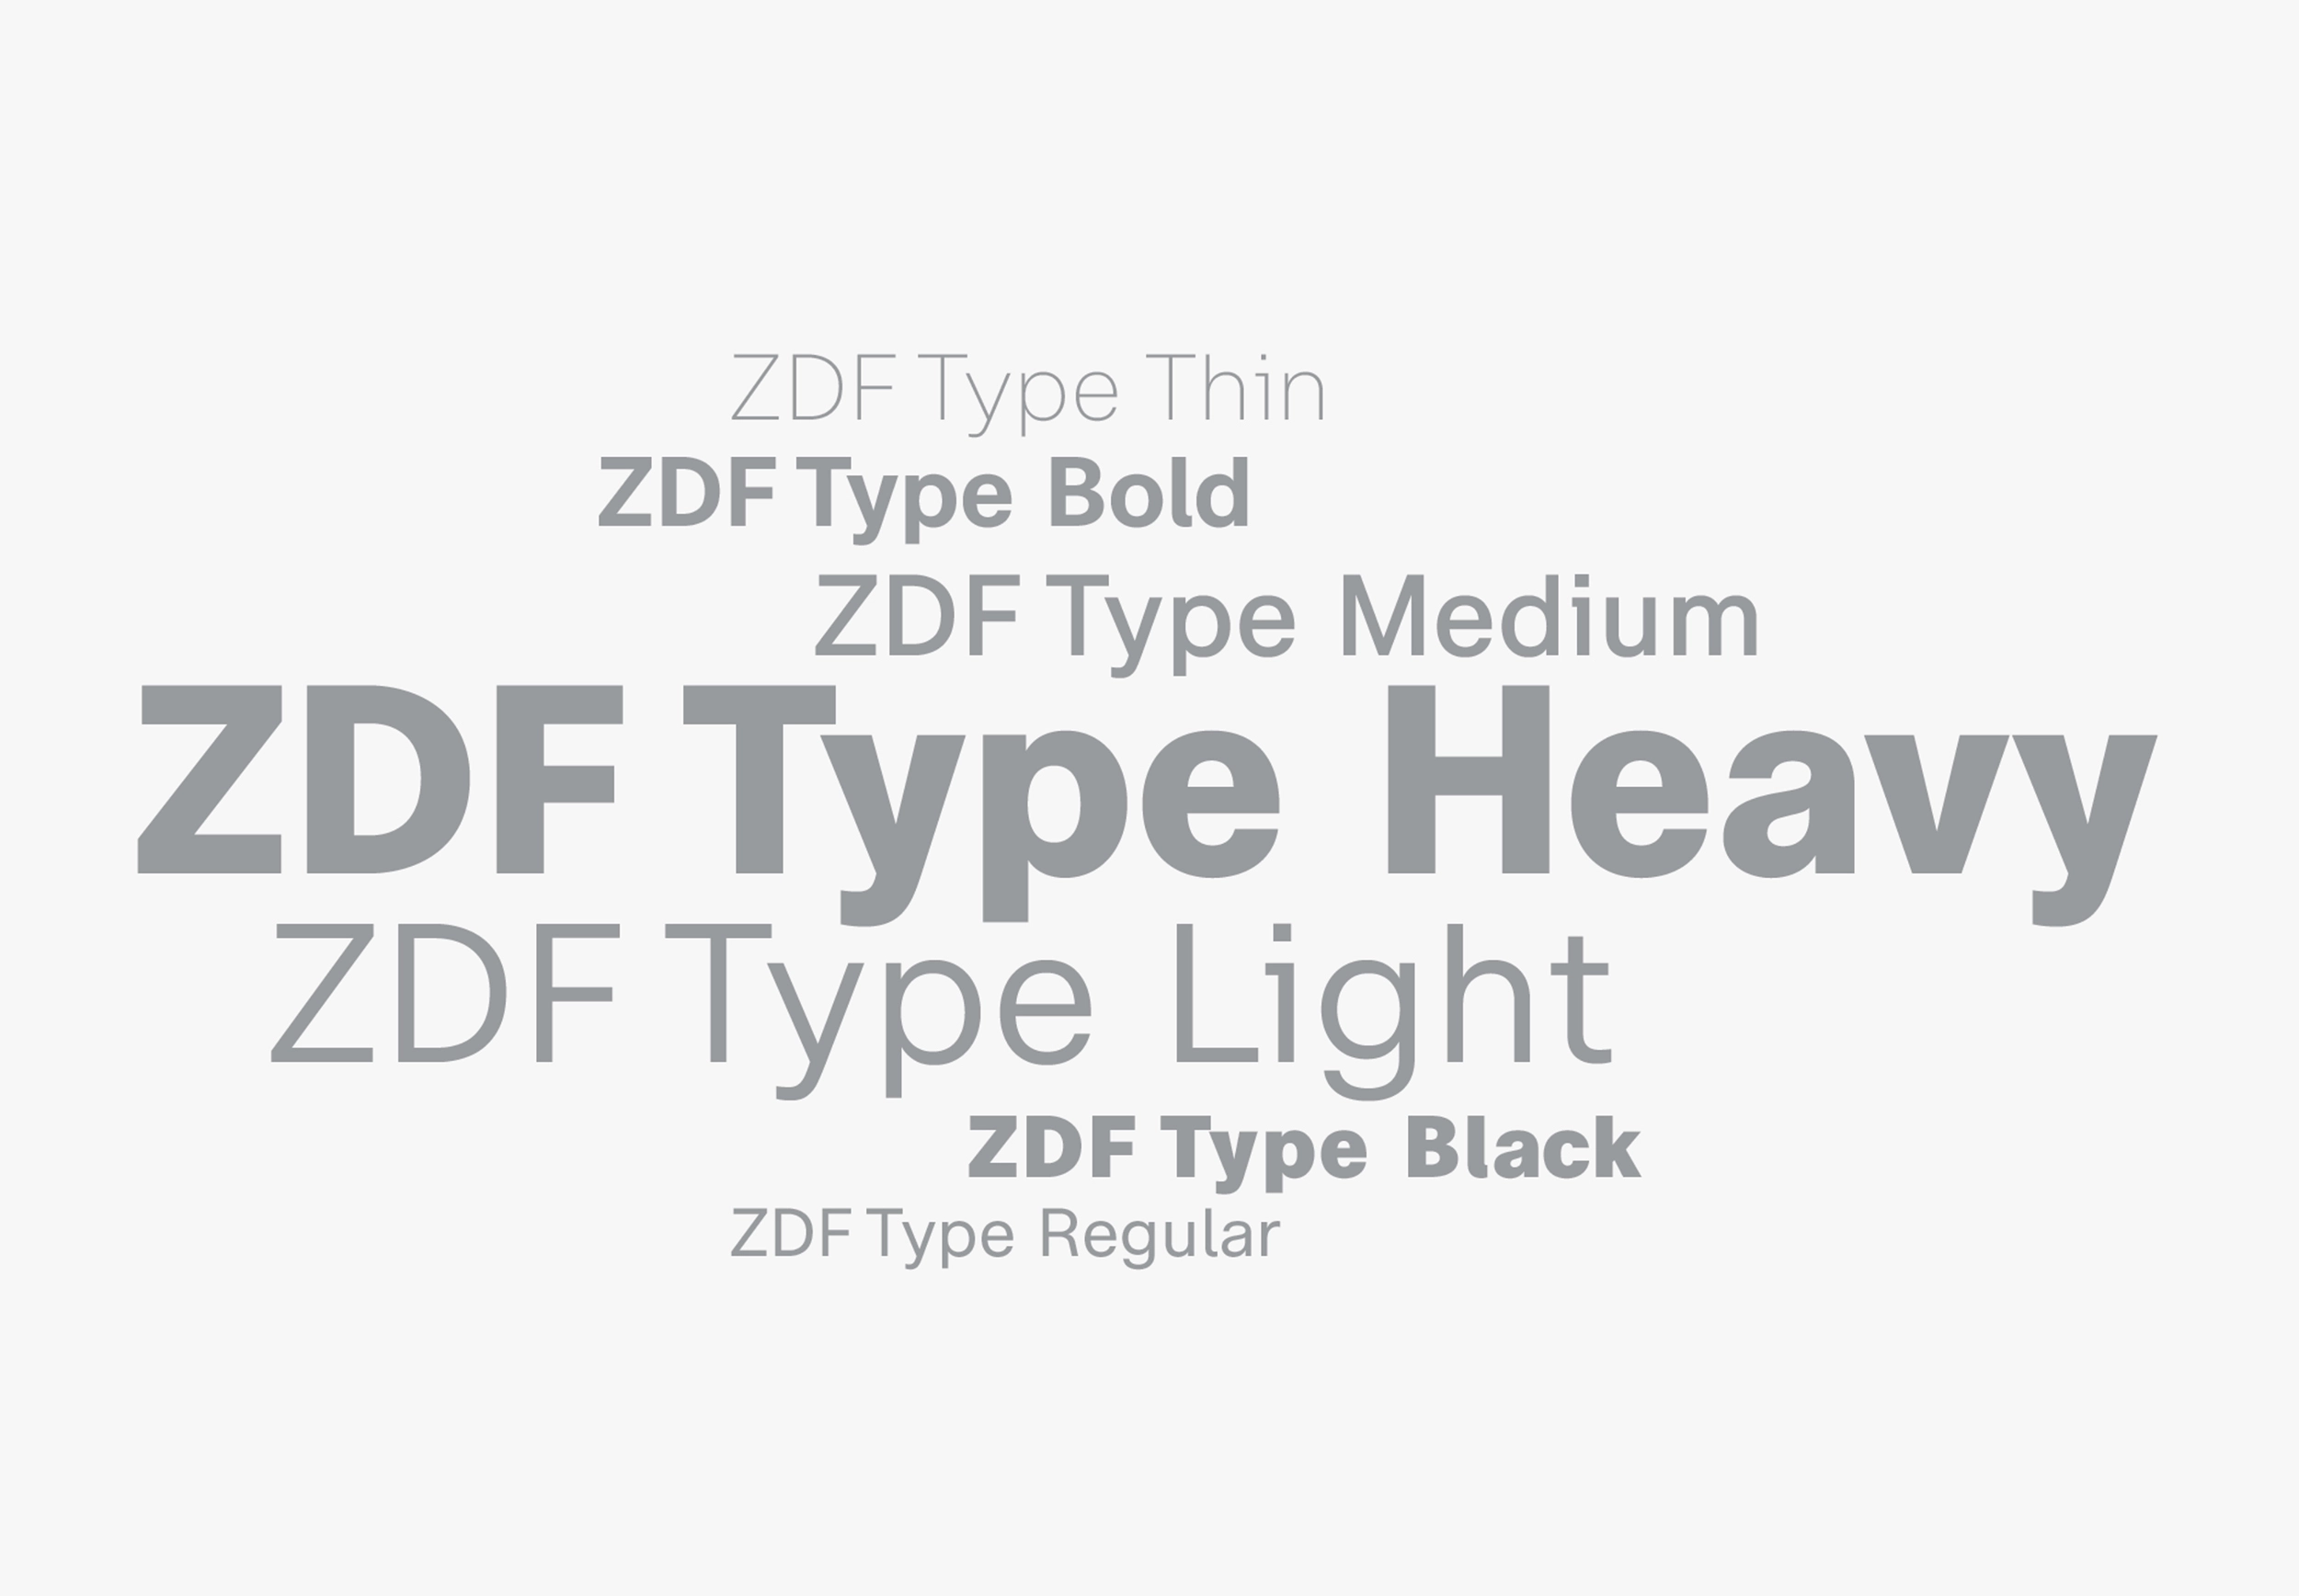 Styleguide Typografie am Beispiel vom ZDF